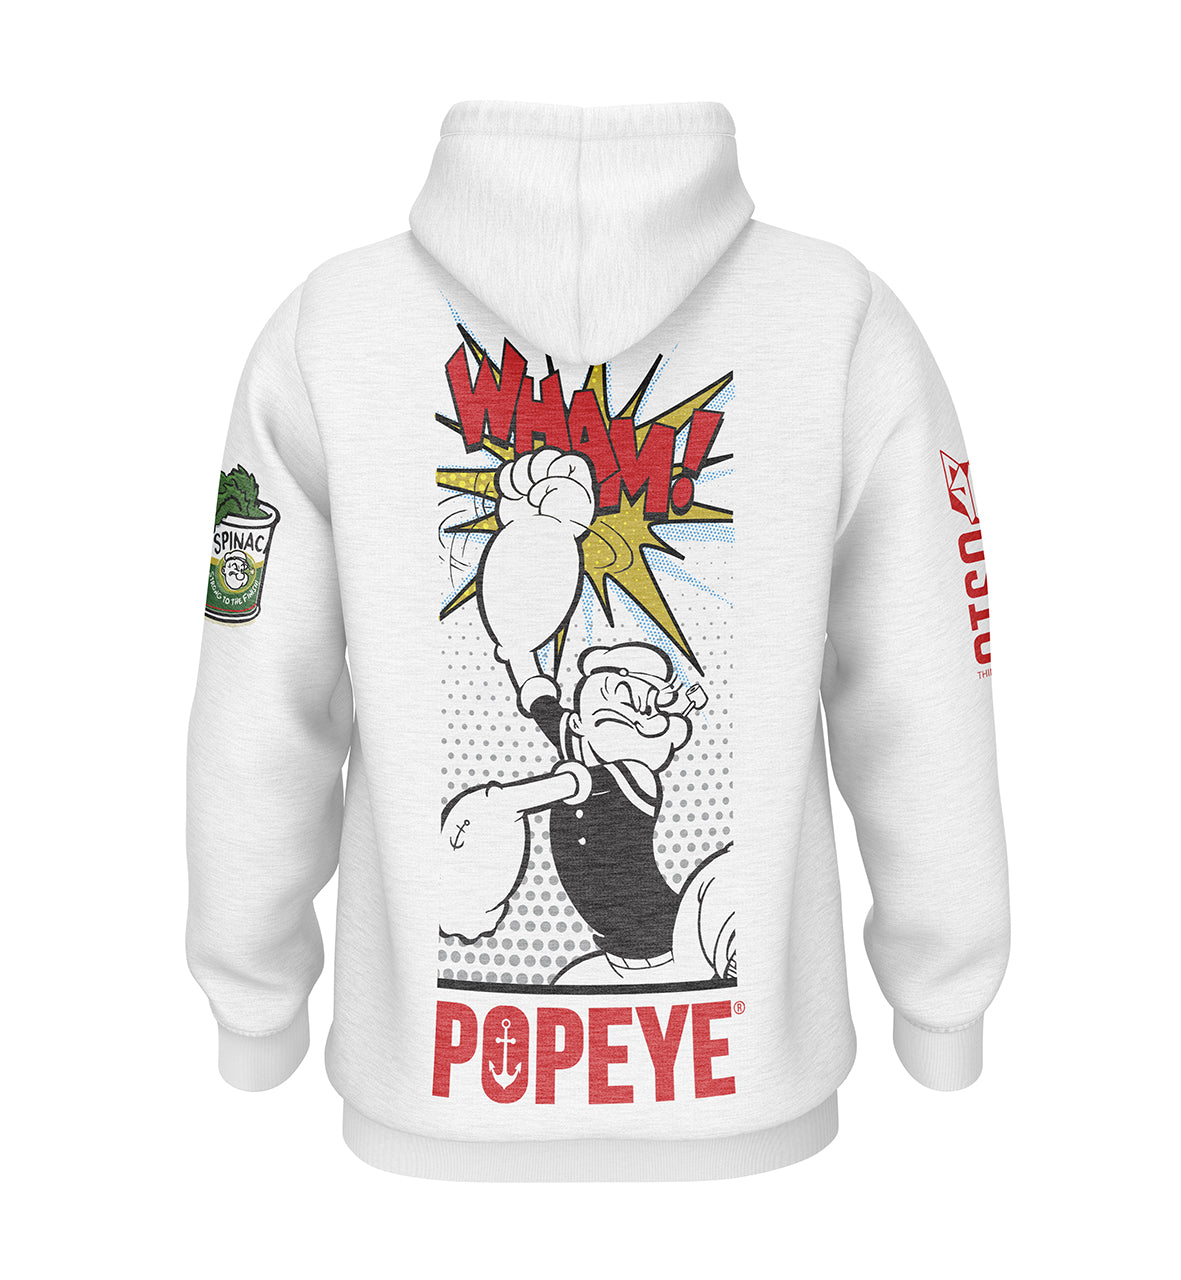 Hoodie - Popeye Pop Art